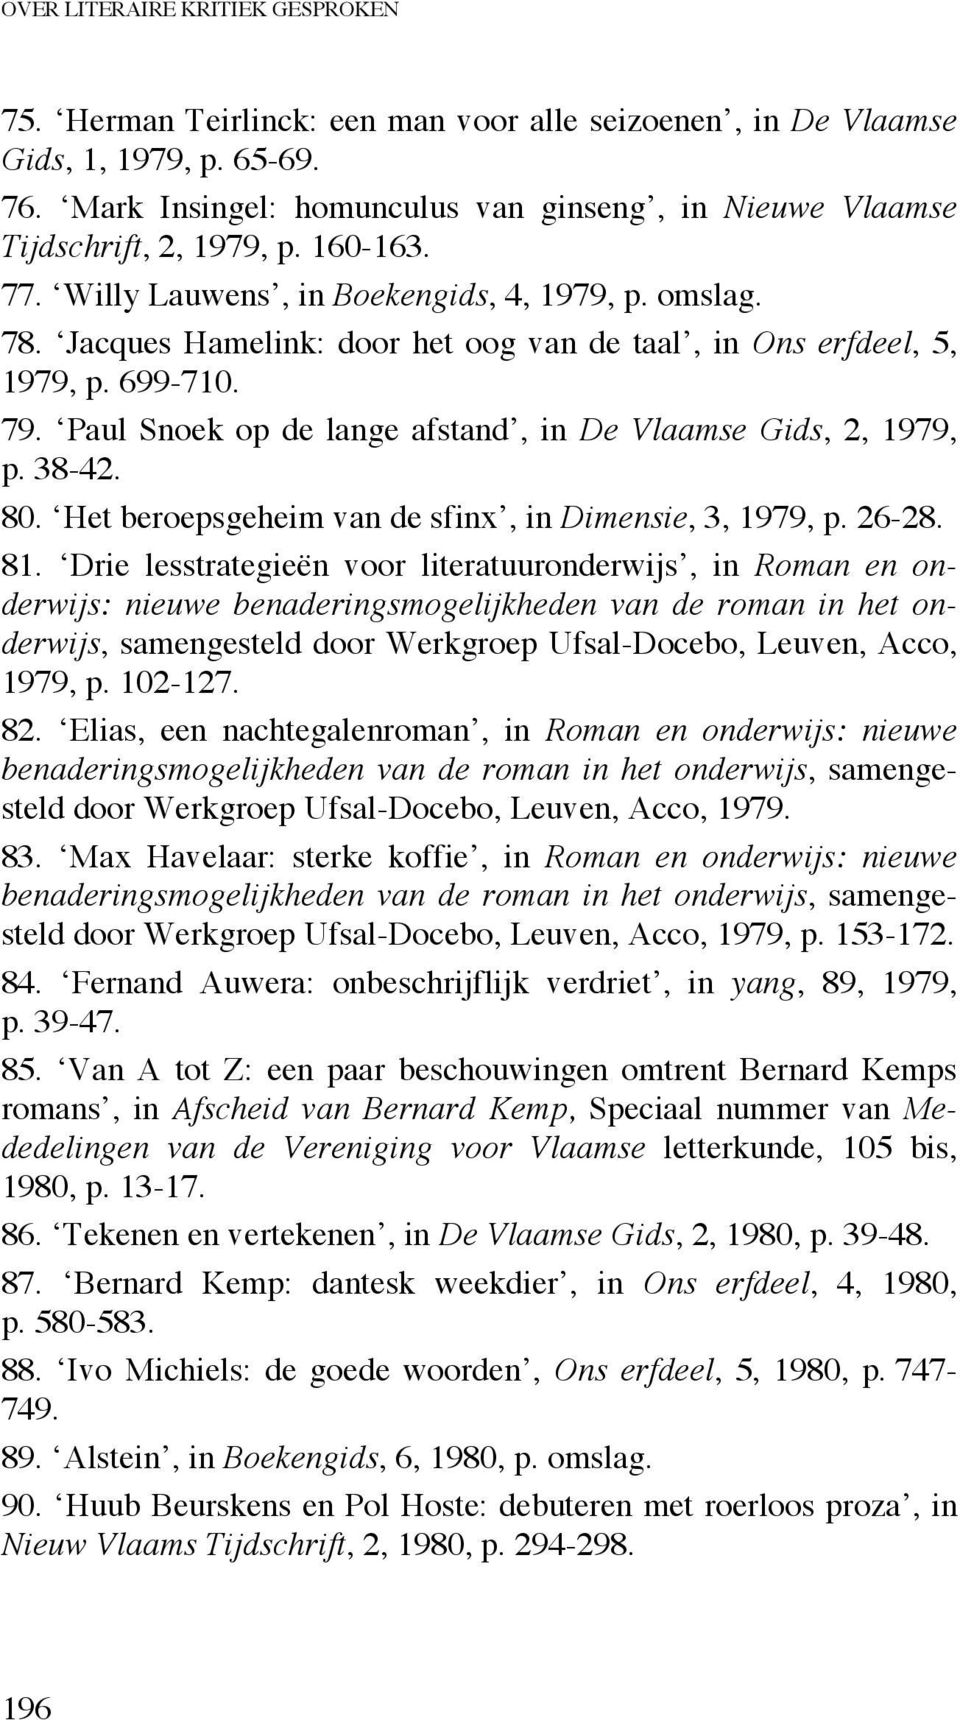 Jacques Hamelink: door het oog van de taal, in Ons erfdeel, 5, 1979, p. 699-710. 79. Paul Snoek op de lange afstand, in De Vlaamse Gids, 2, 1979, p. 38-42. 80.